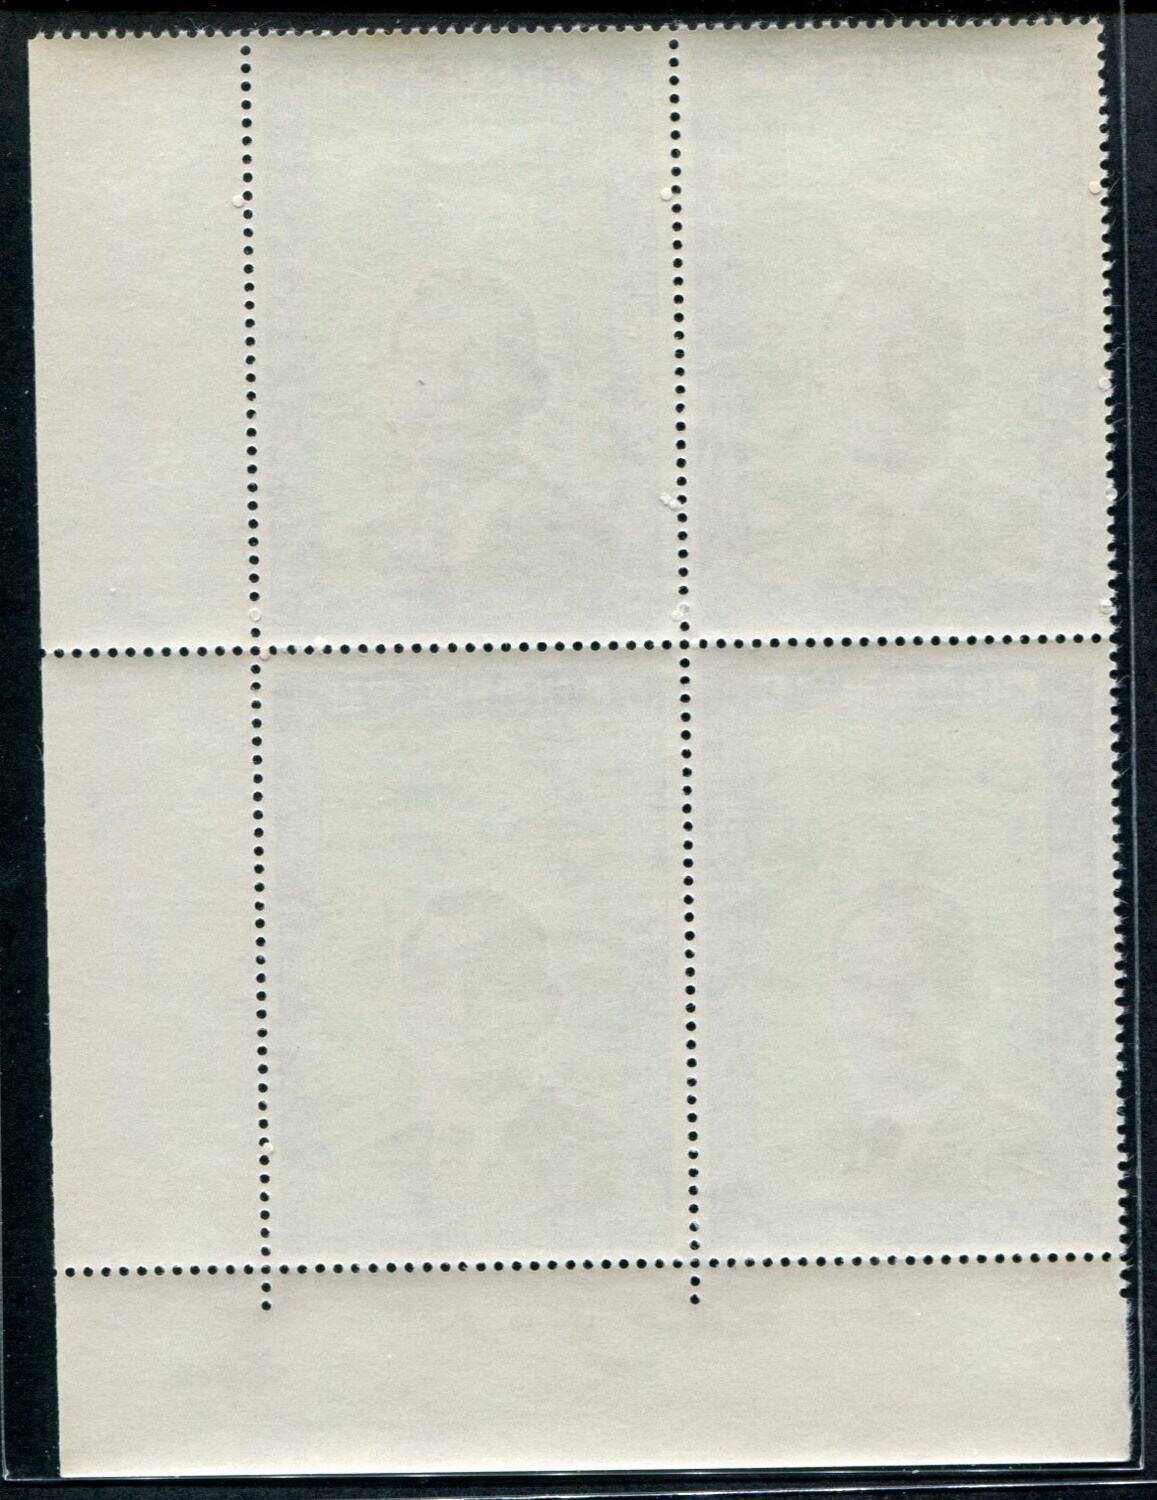 1970년 대통령 대형 보통 명판 2종 미사용 ( VF, MNH, OG)